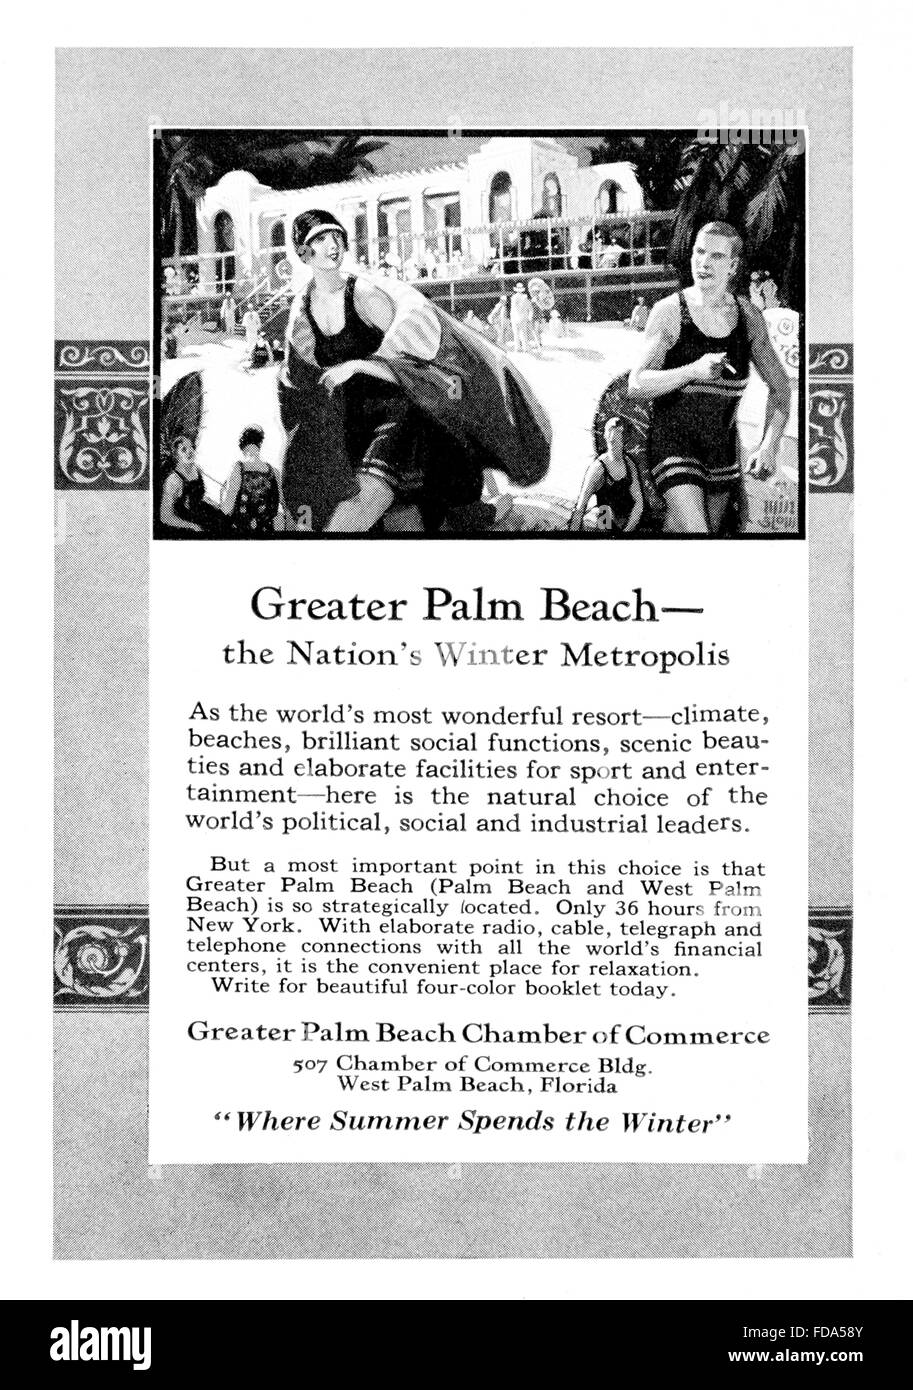 Vacanze in Florida, maggiore Palm Beach, la nazione metropoli invernale, viaggi pubblicità dal 1926 Foto Stock